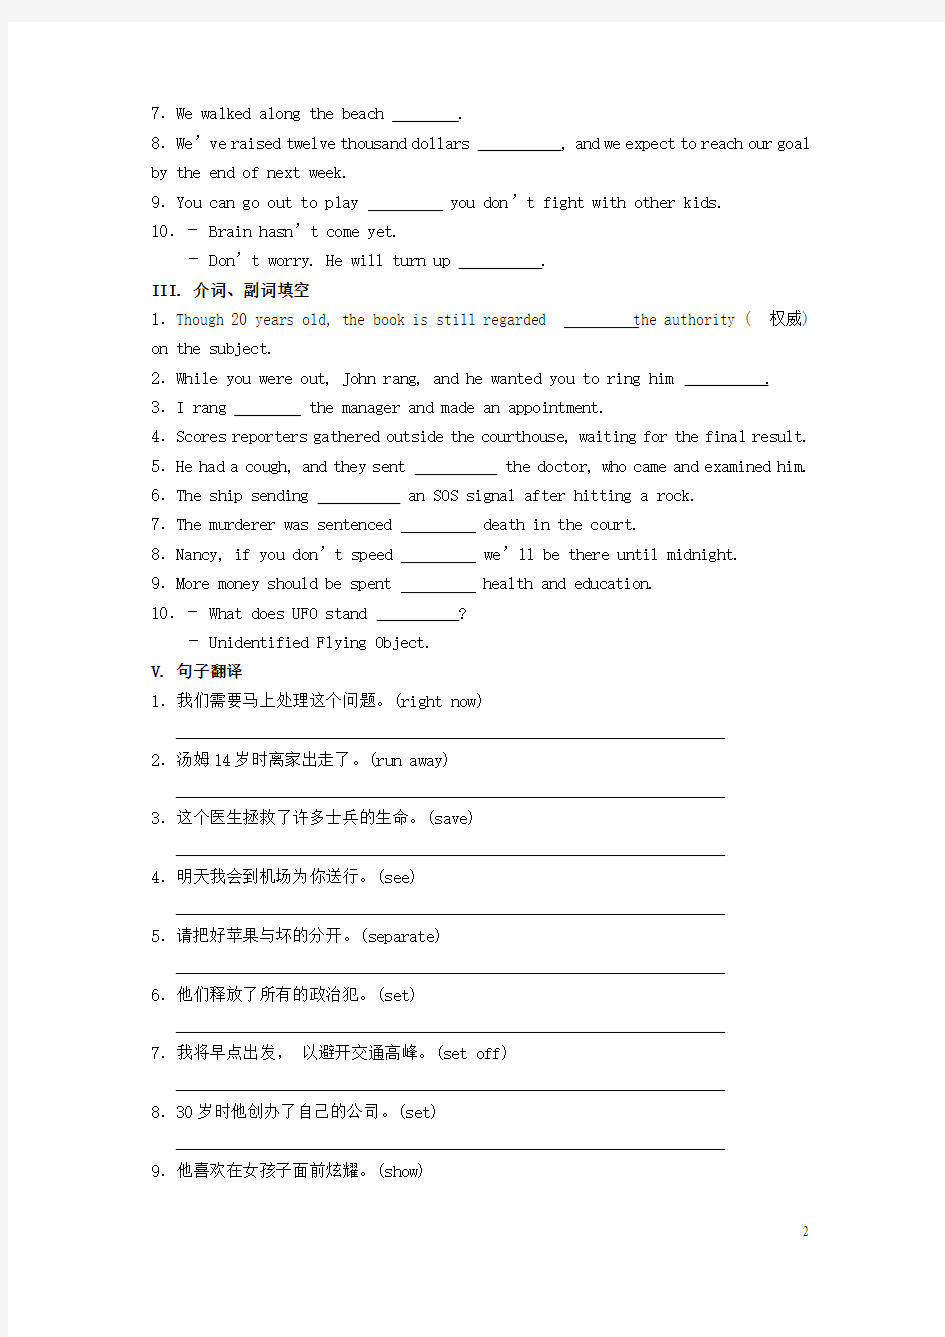 上海市高考英语核心词汇复习第34课时(putoutstickto)